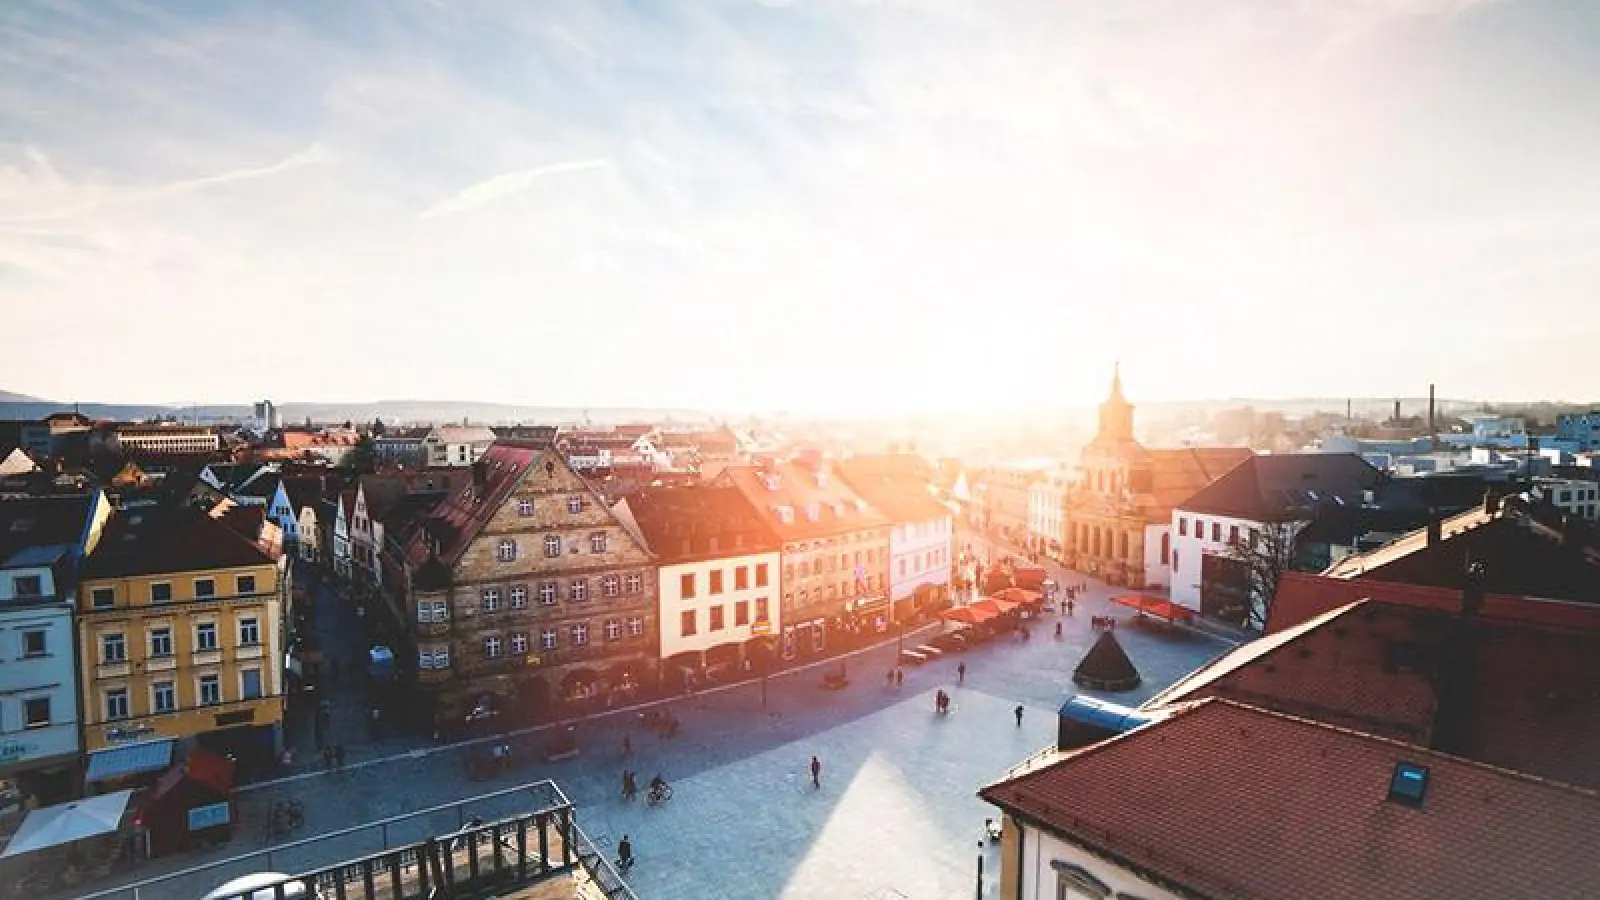 Lokalnachrichten in Bayreuth: Ideen für die Innenstadt der Zukunft gesucht (Foto: red)